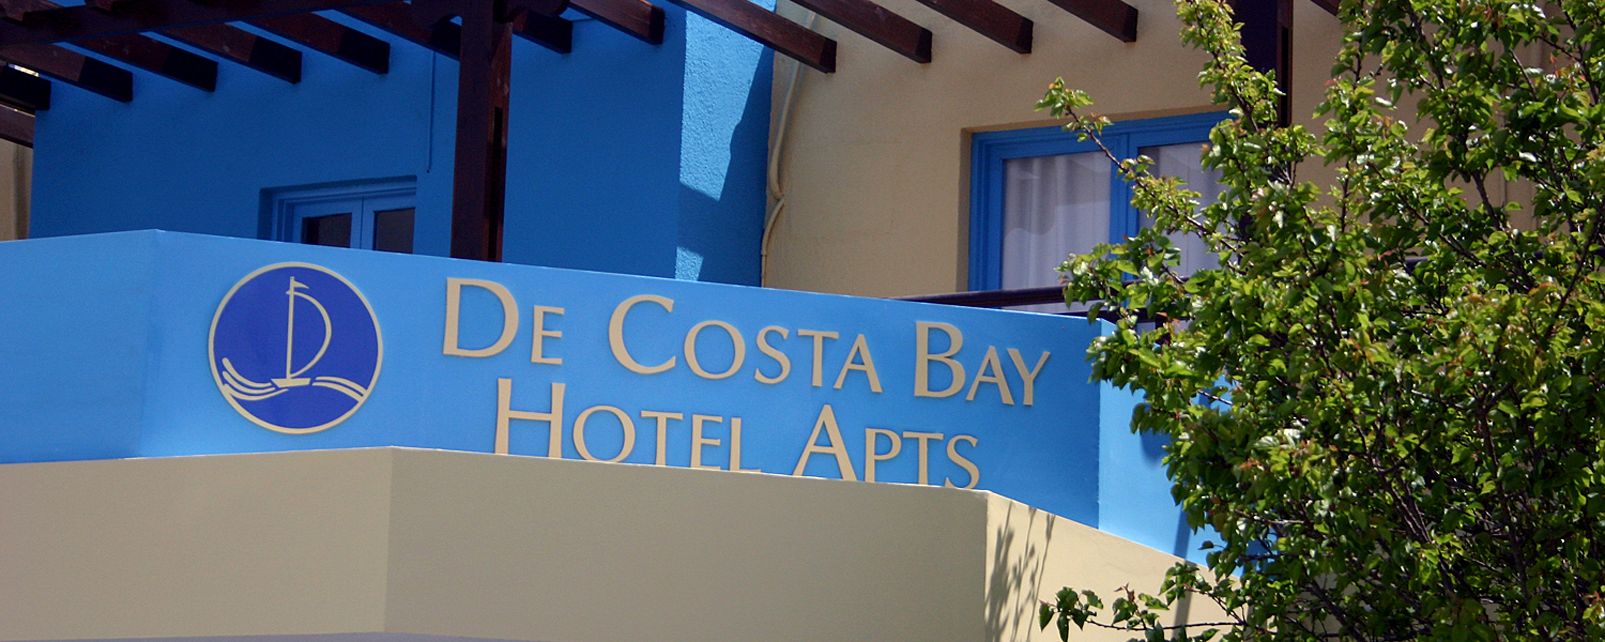 Hotel De Costa Bay